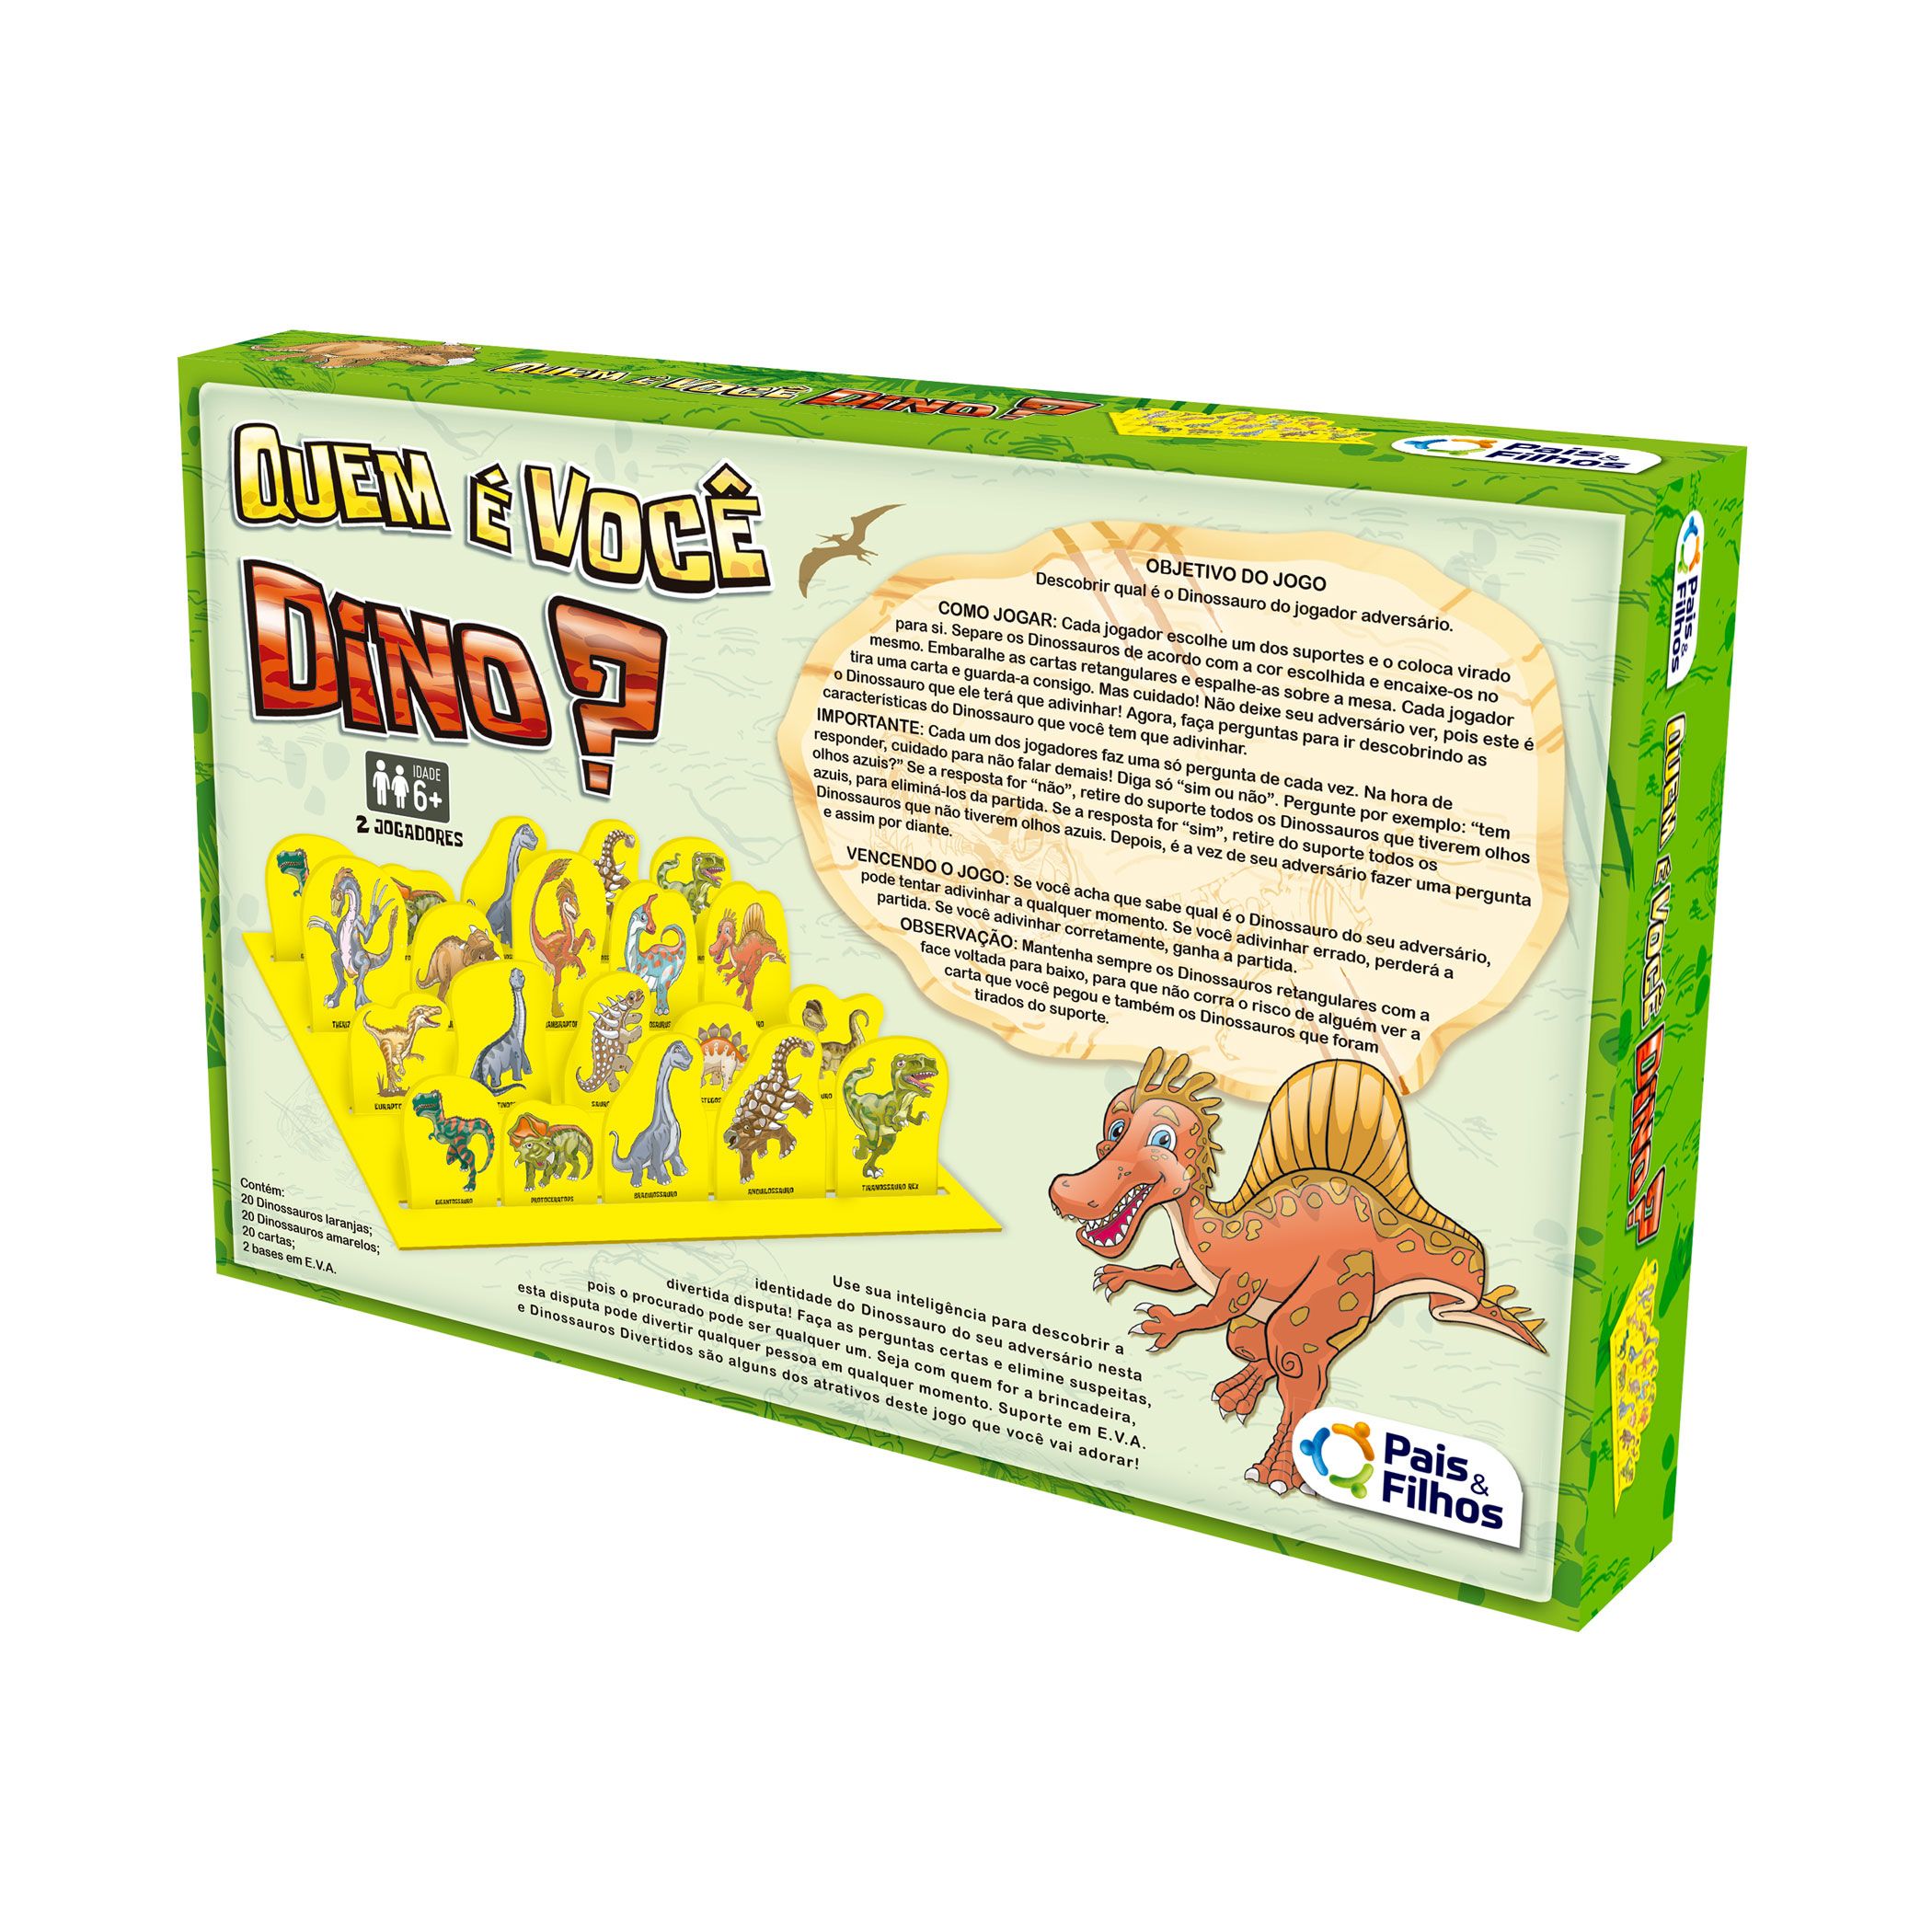 Cartão de jogo de memória da disney, dinossauro, cartas de batalha